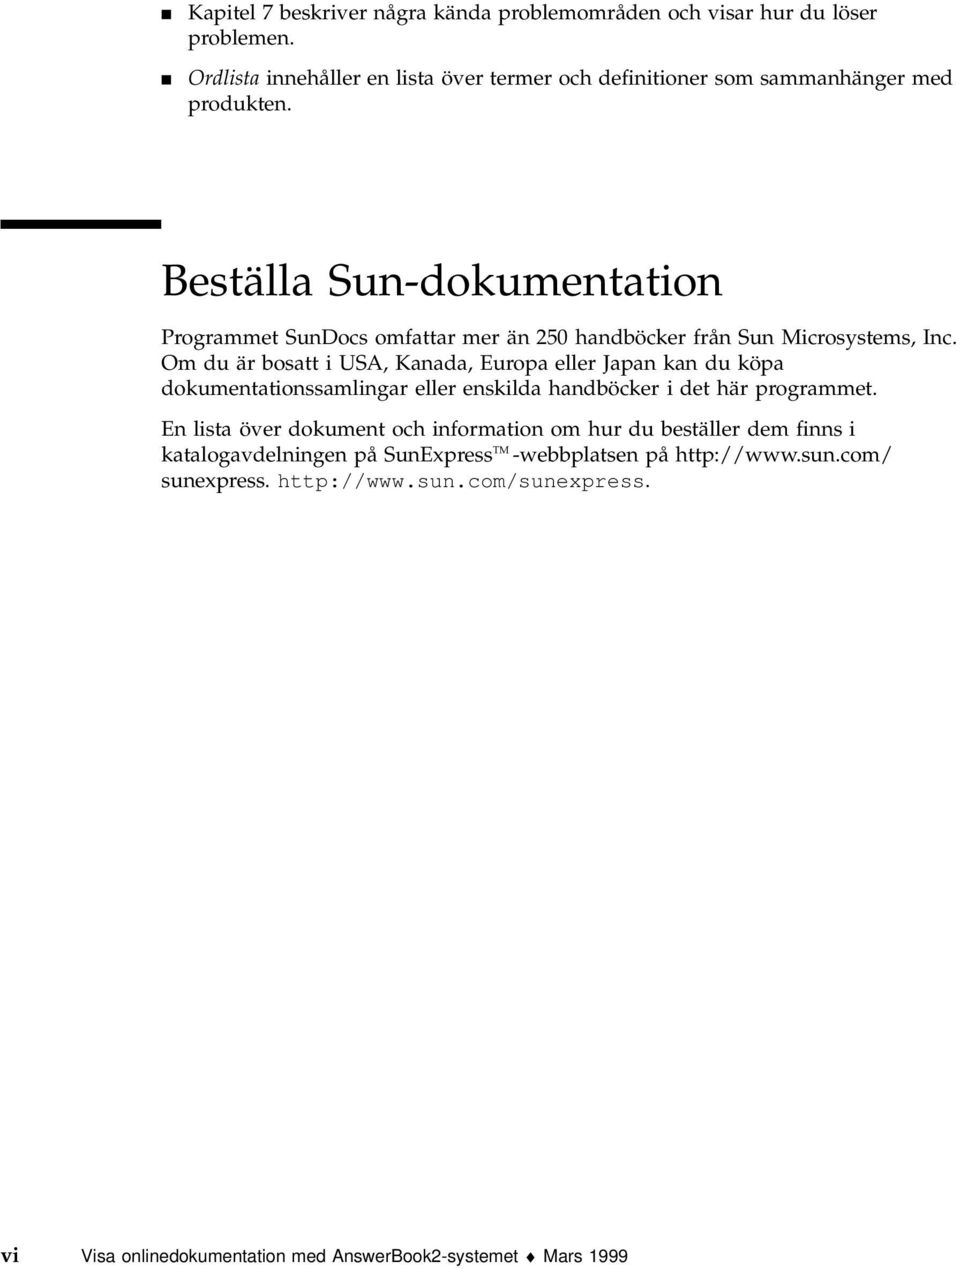 Beställa Sun-dokumentation Programmet SunDocs omfattar mer än 250 handböcker från Sun Microsystems, Inc.